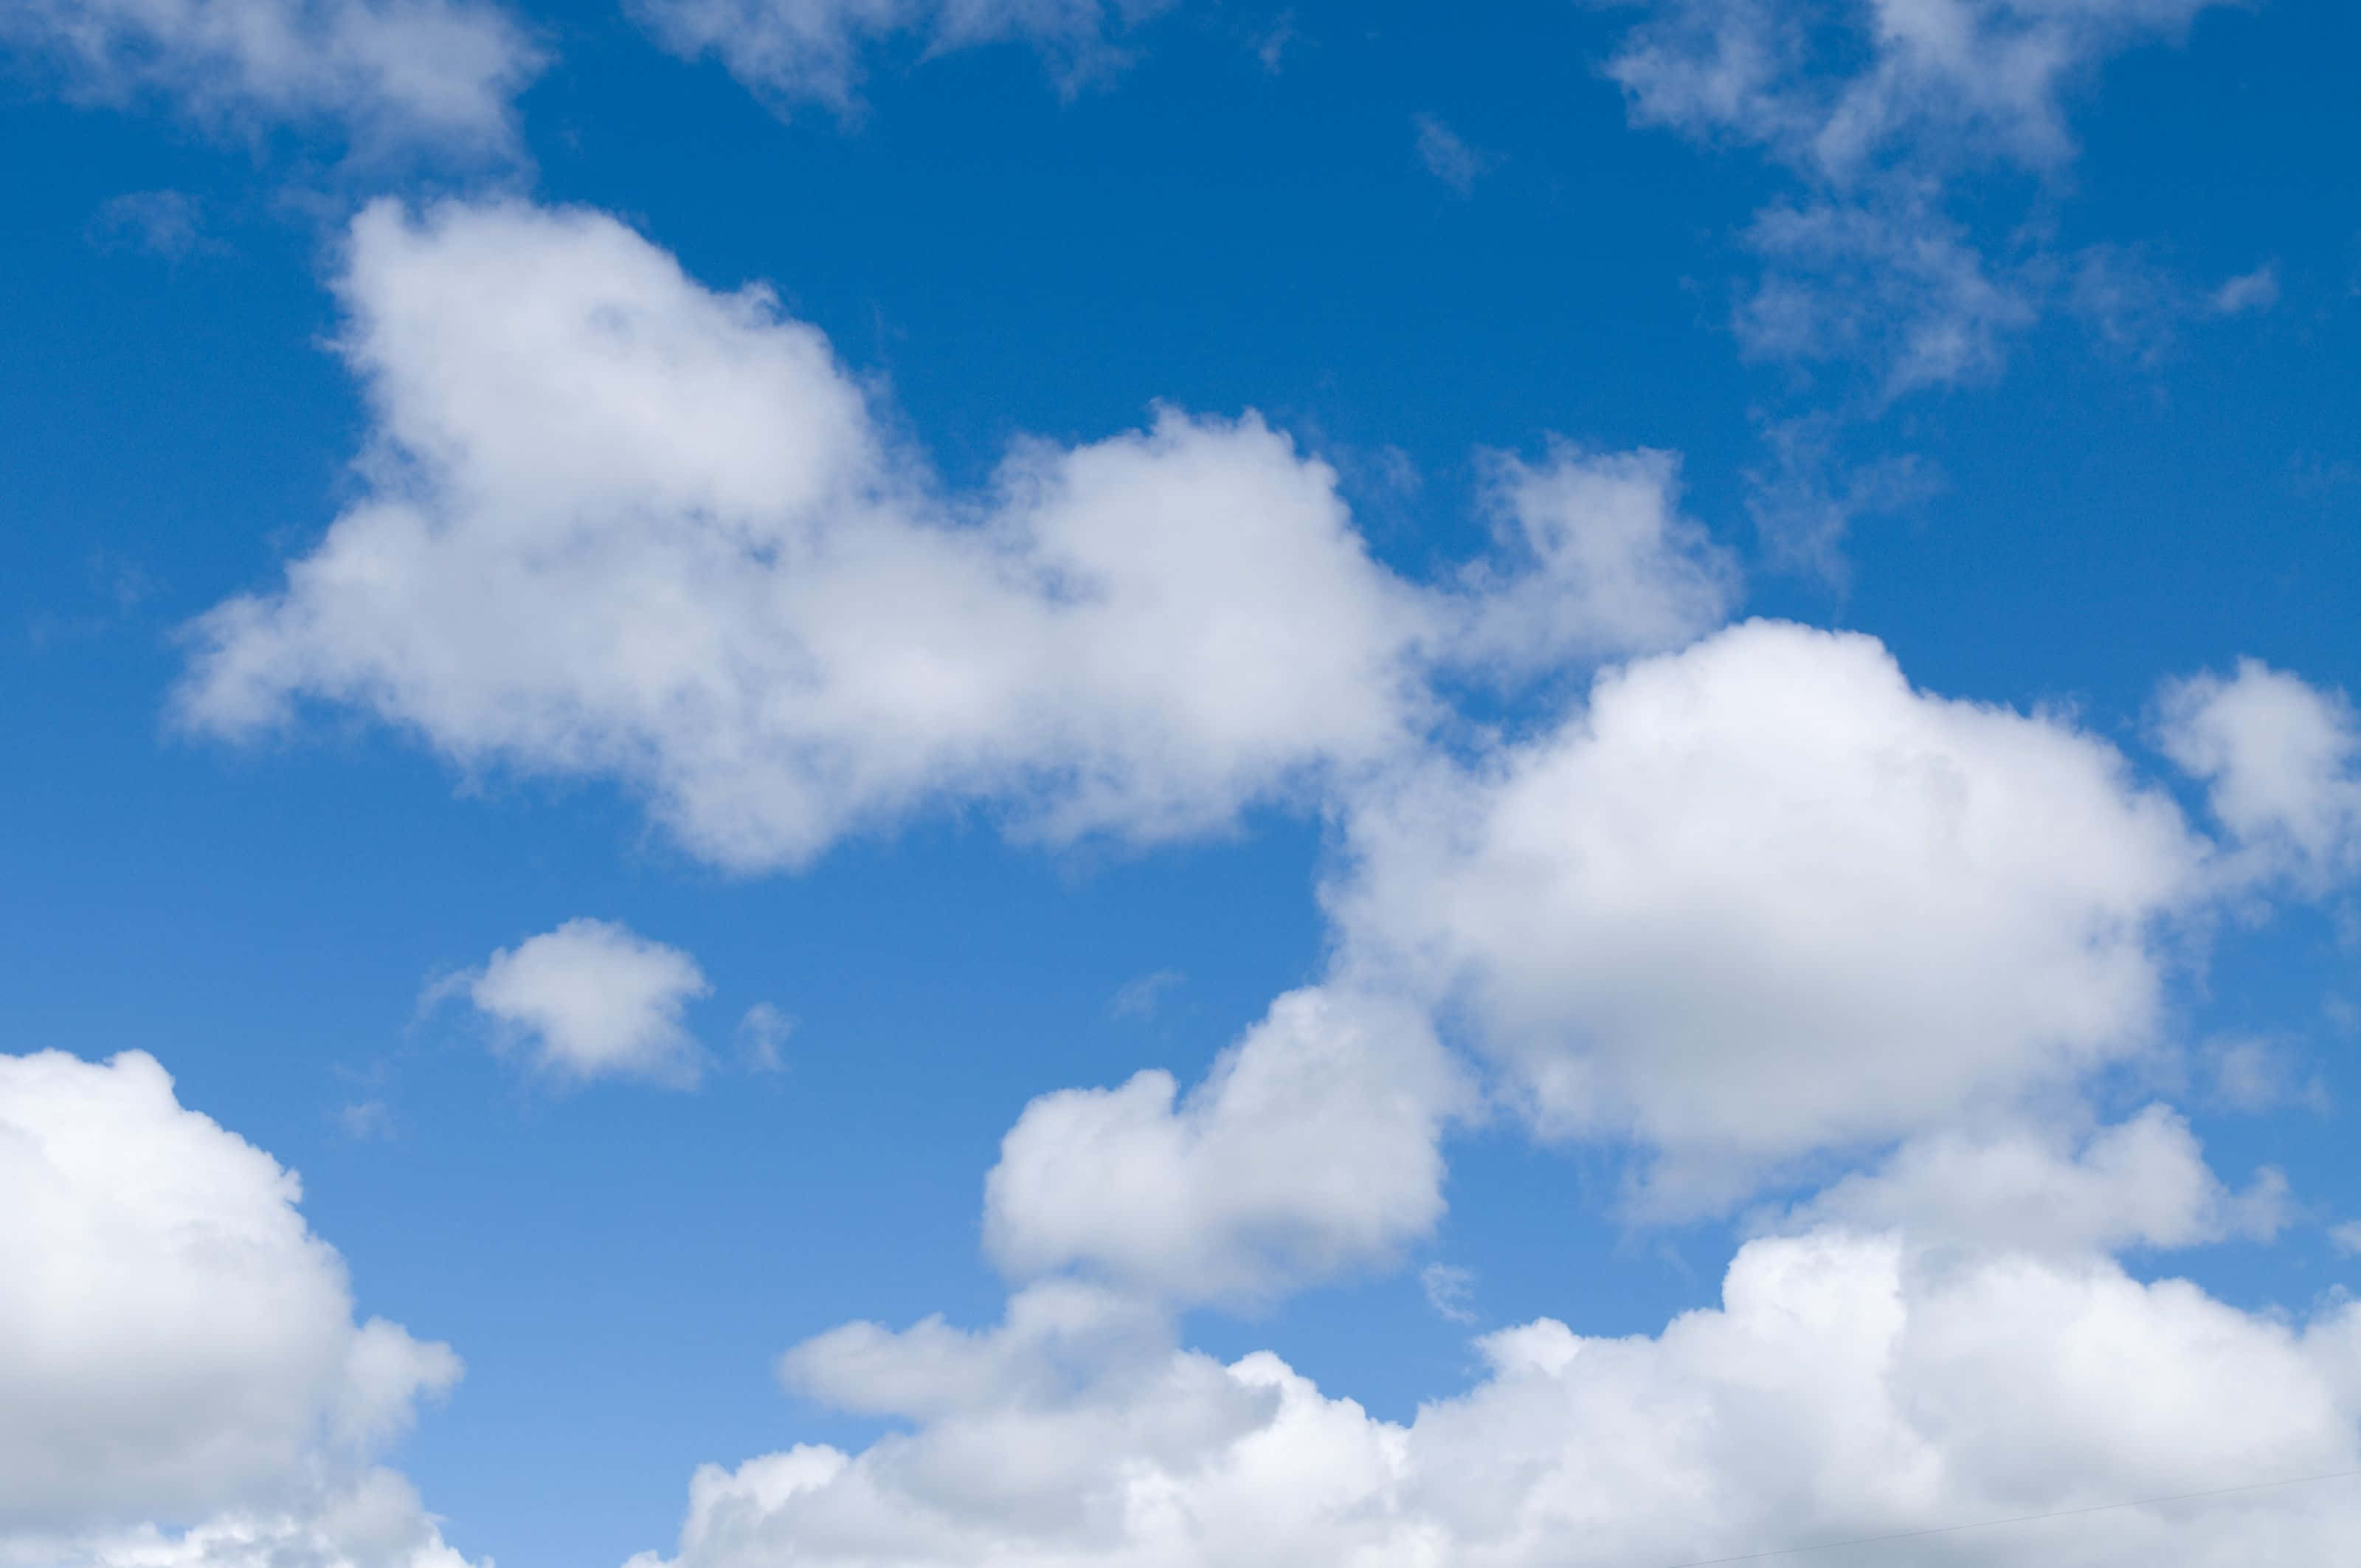 Unavista De Nubes Azules Exuberantes En El Cielo Que Forman Un Impresionante Telón De Fondo.